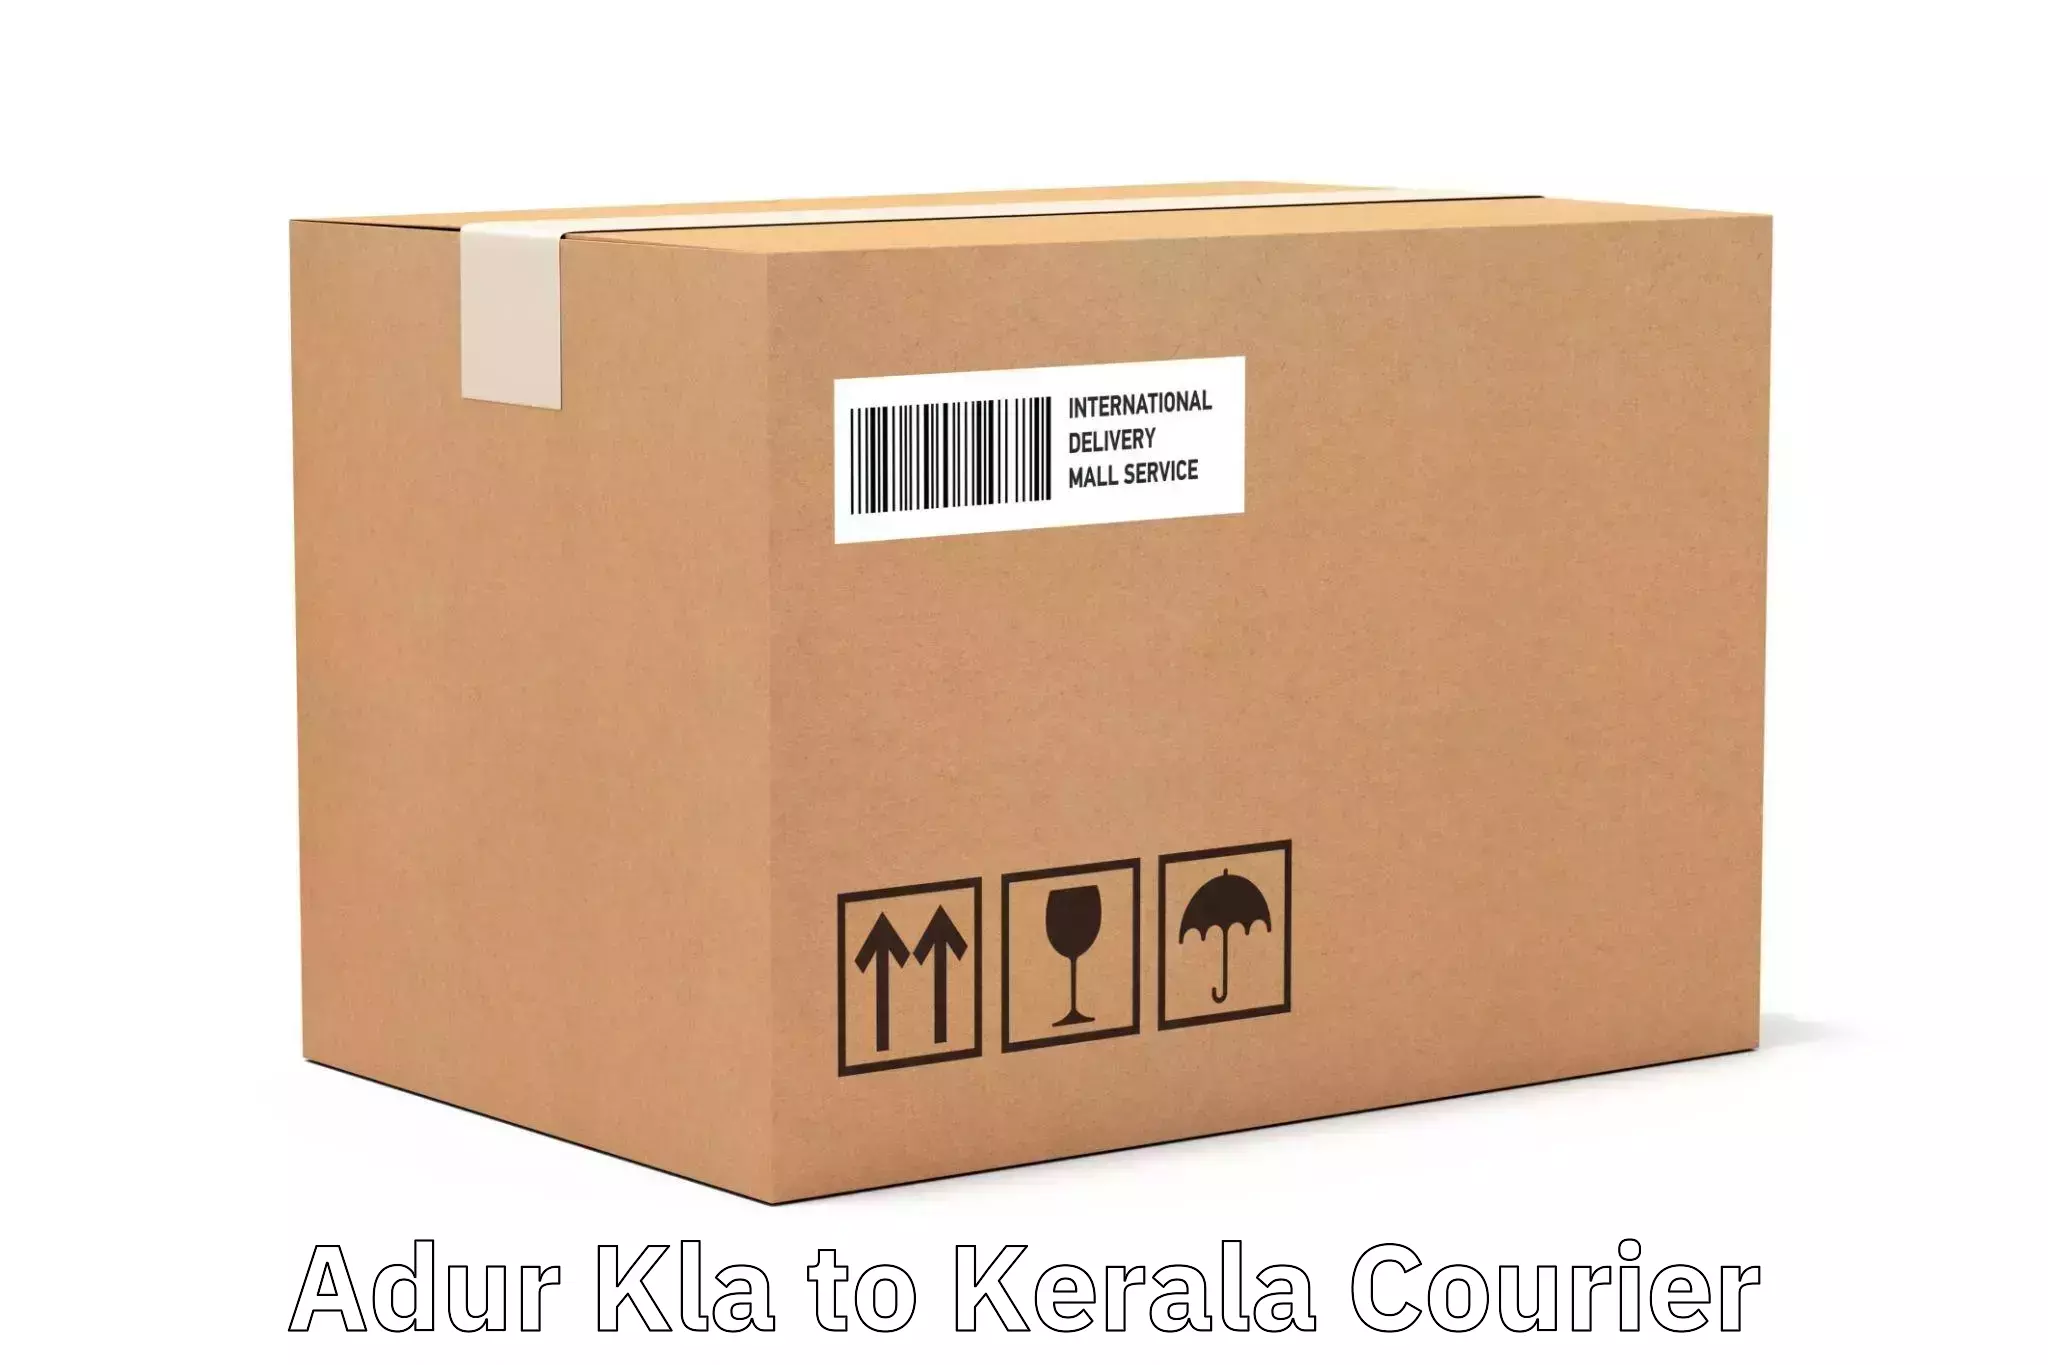 Express logistics providers Adur Kla to Peravoor